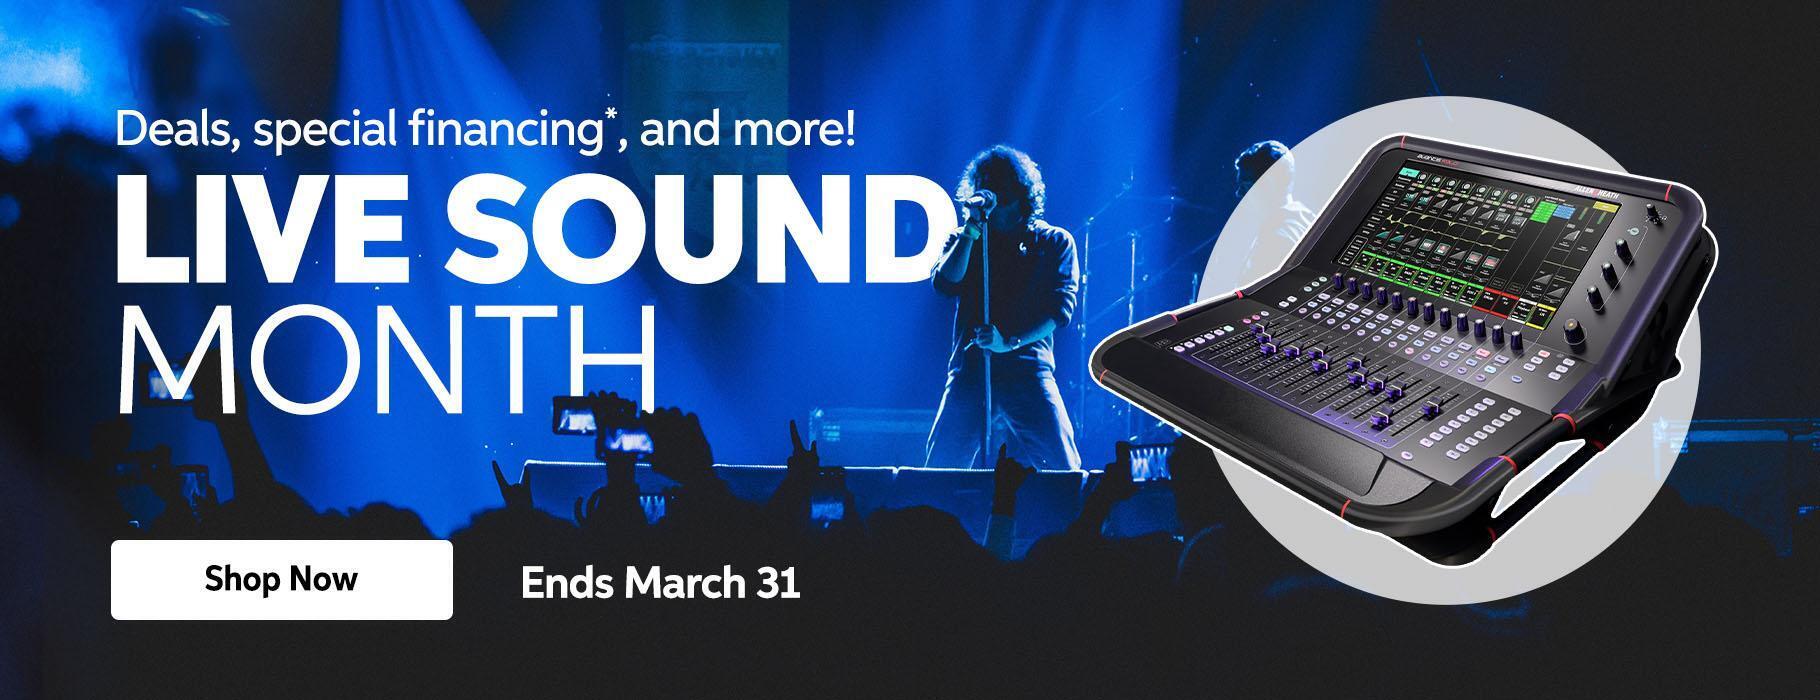 Live Sound Month, Now thru March 31